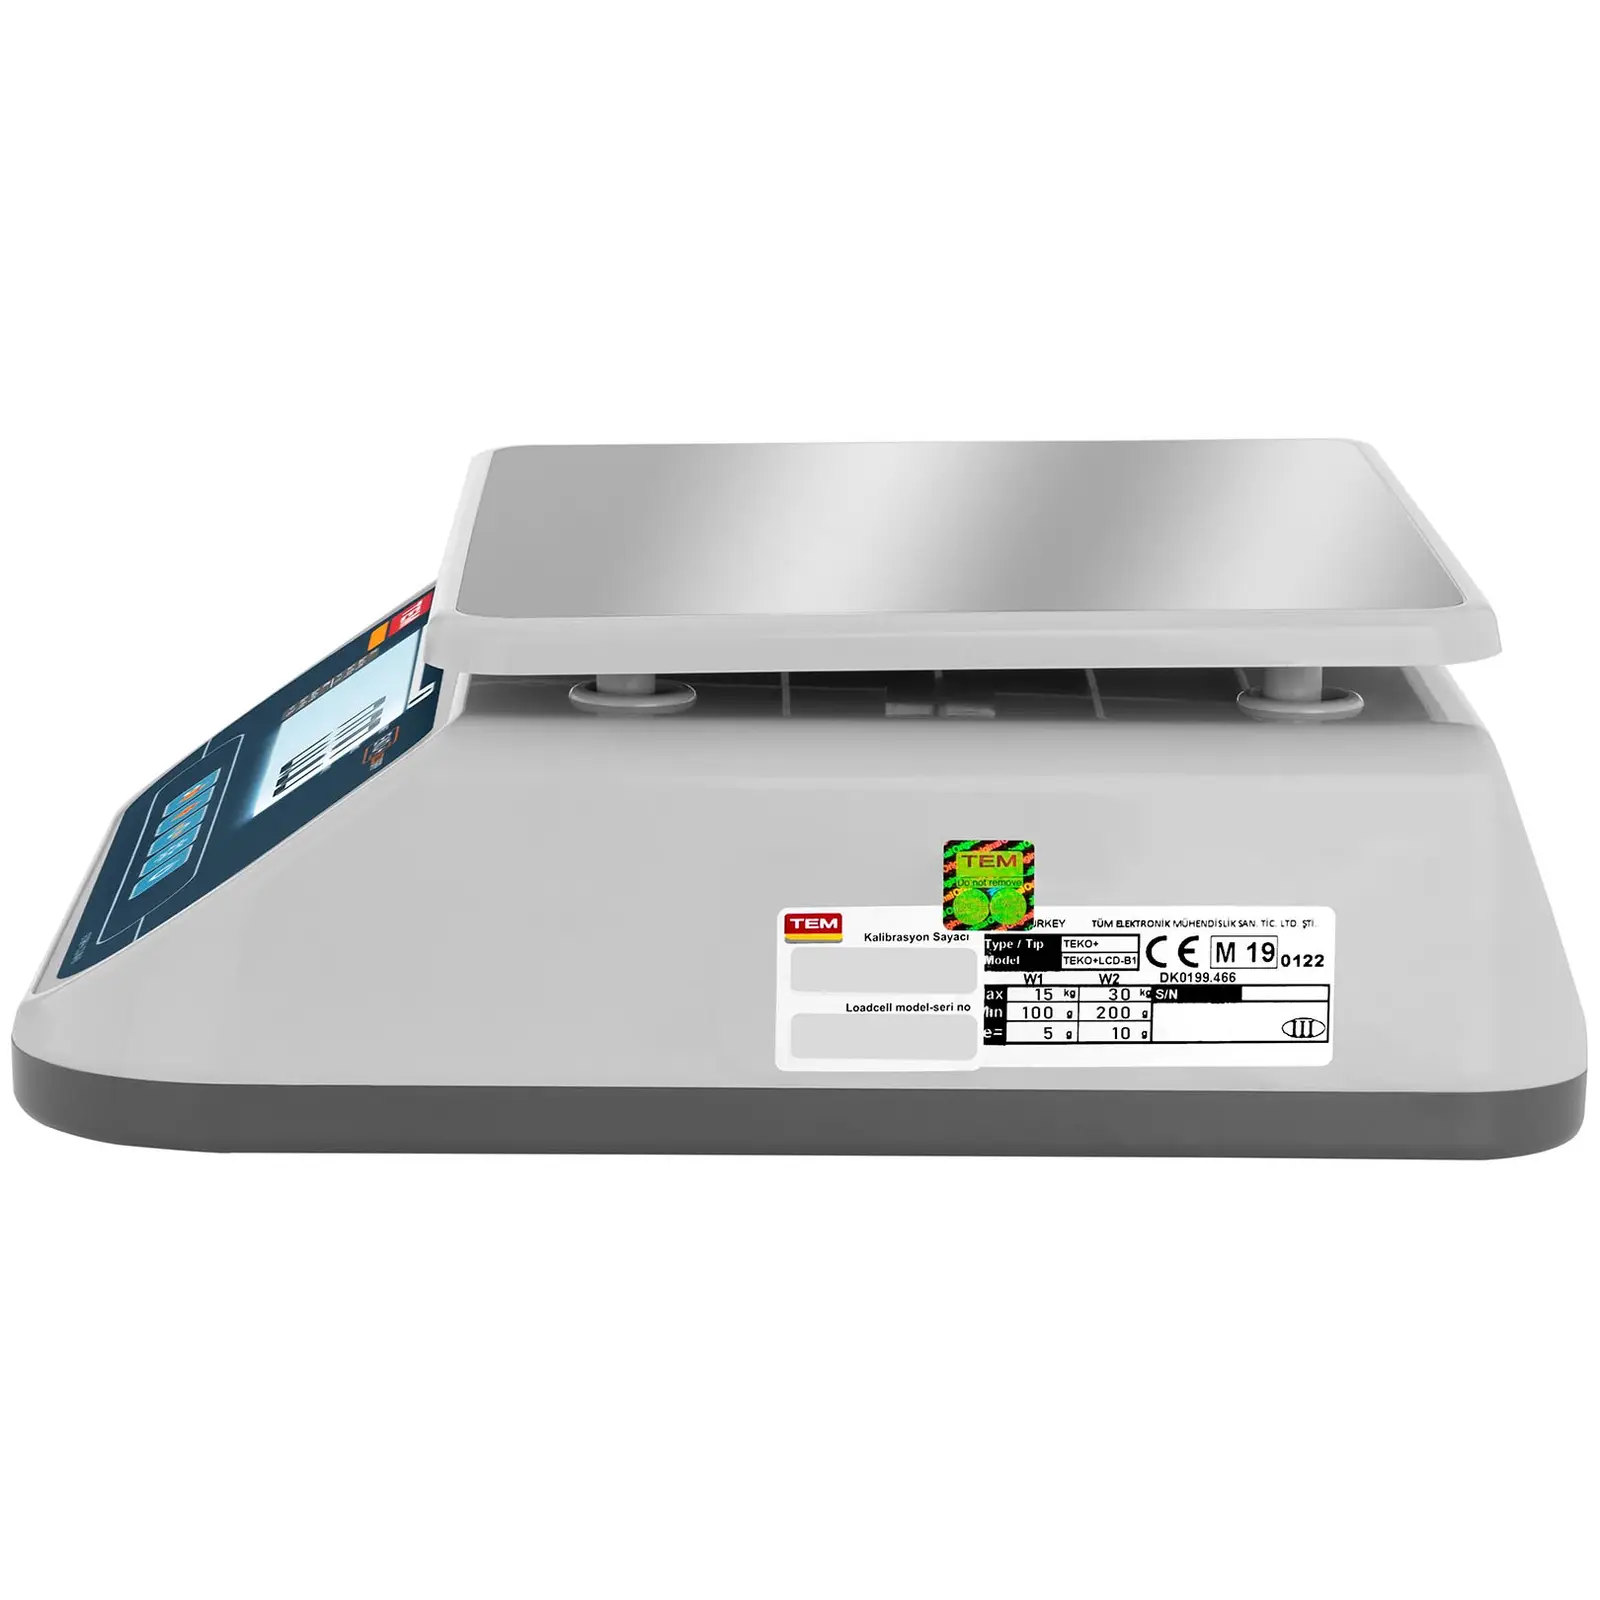 Asztali mérleg - hitelesített - 30 kg/10 g - Dual LCD